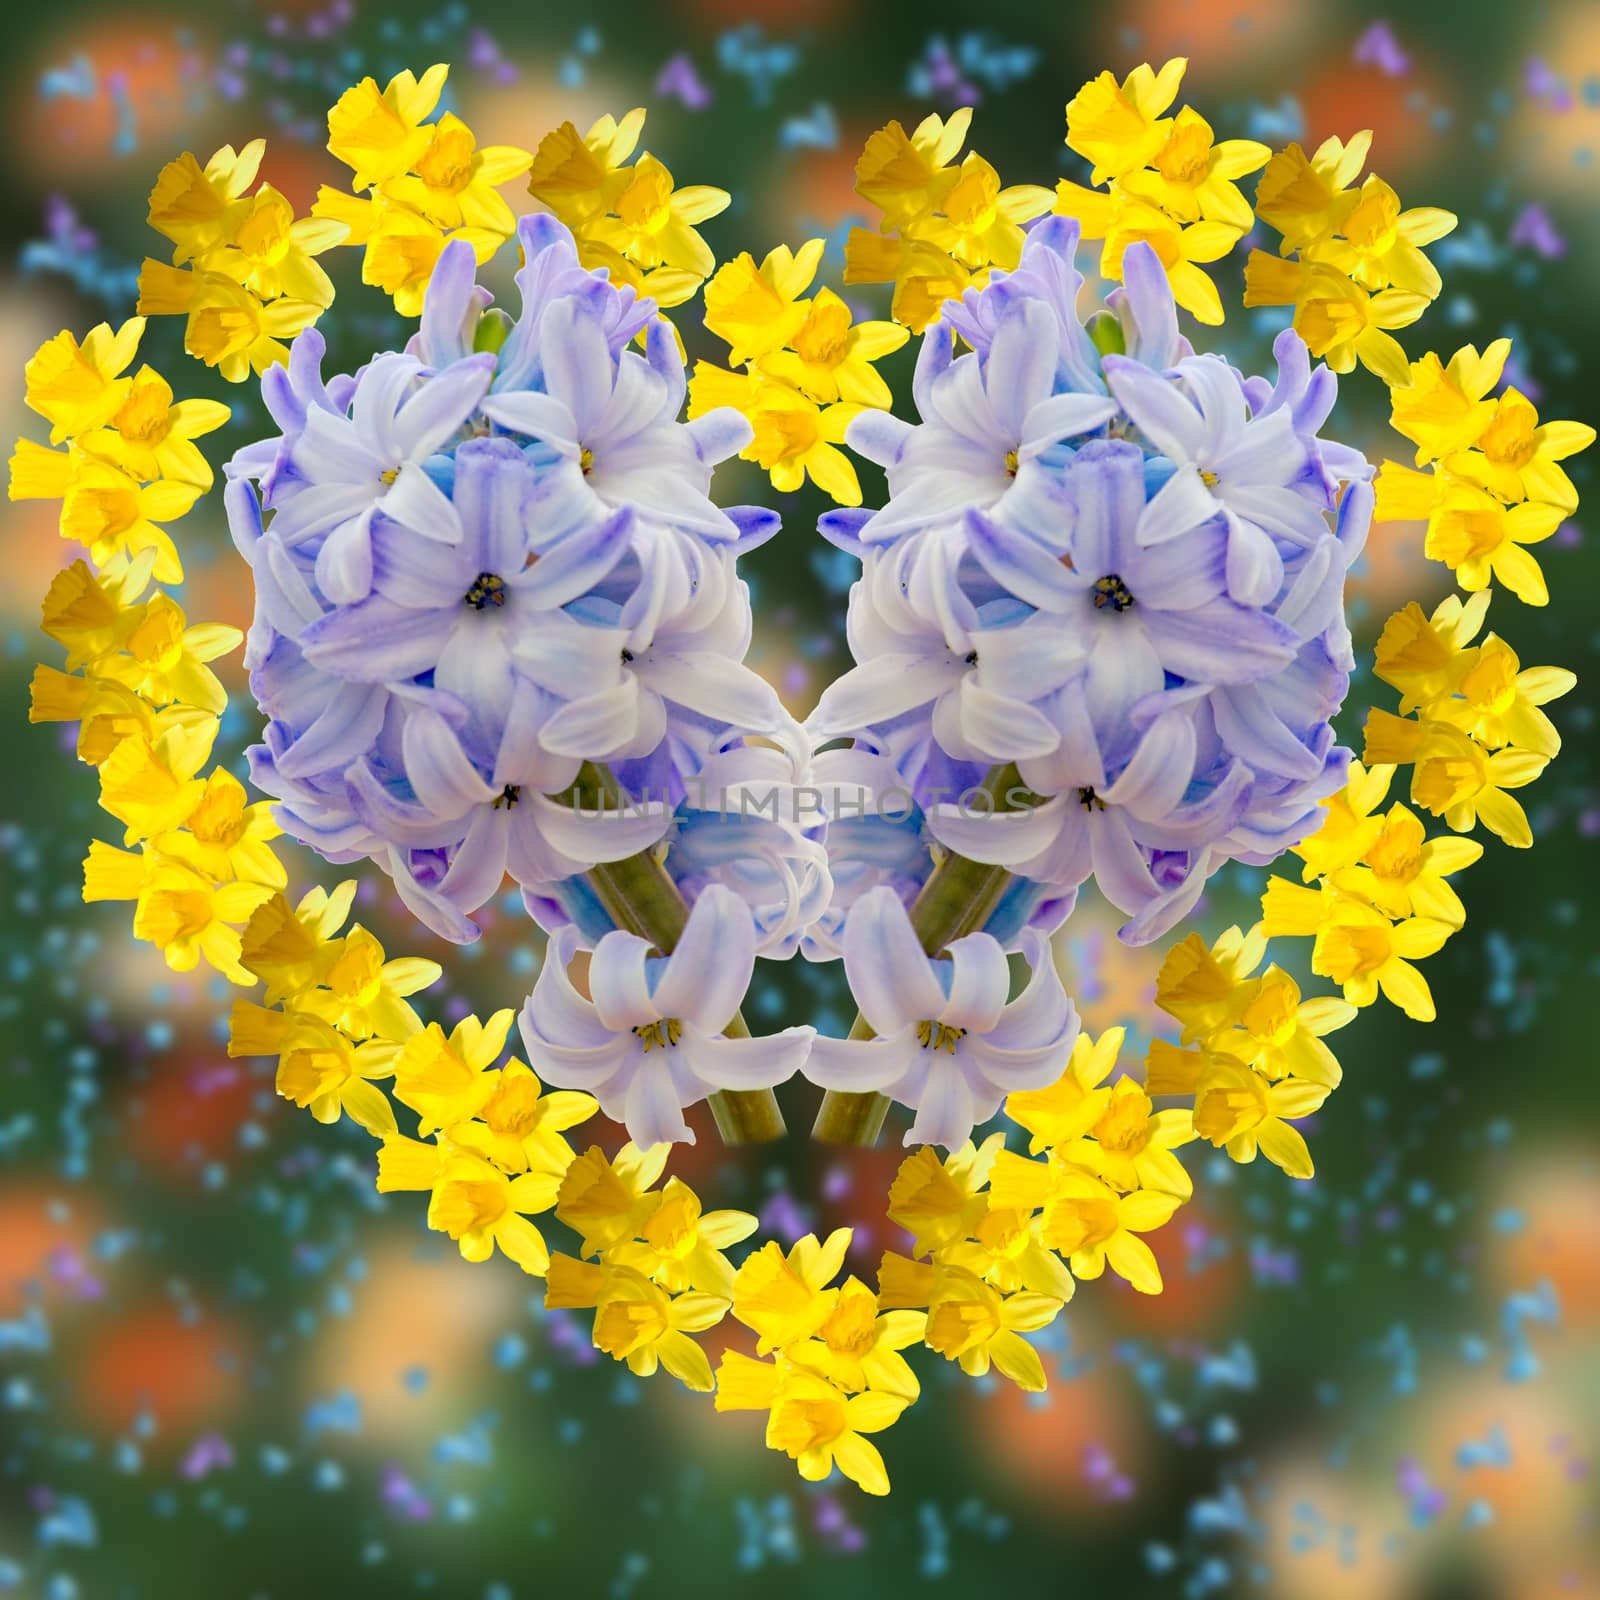 Heart from flowers by Stabivalen